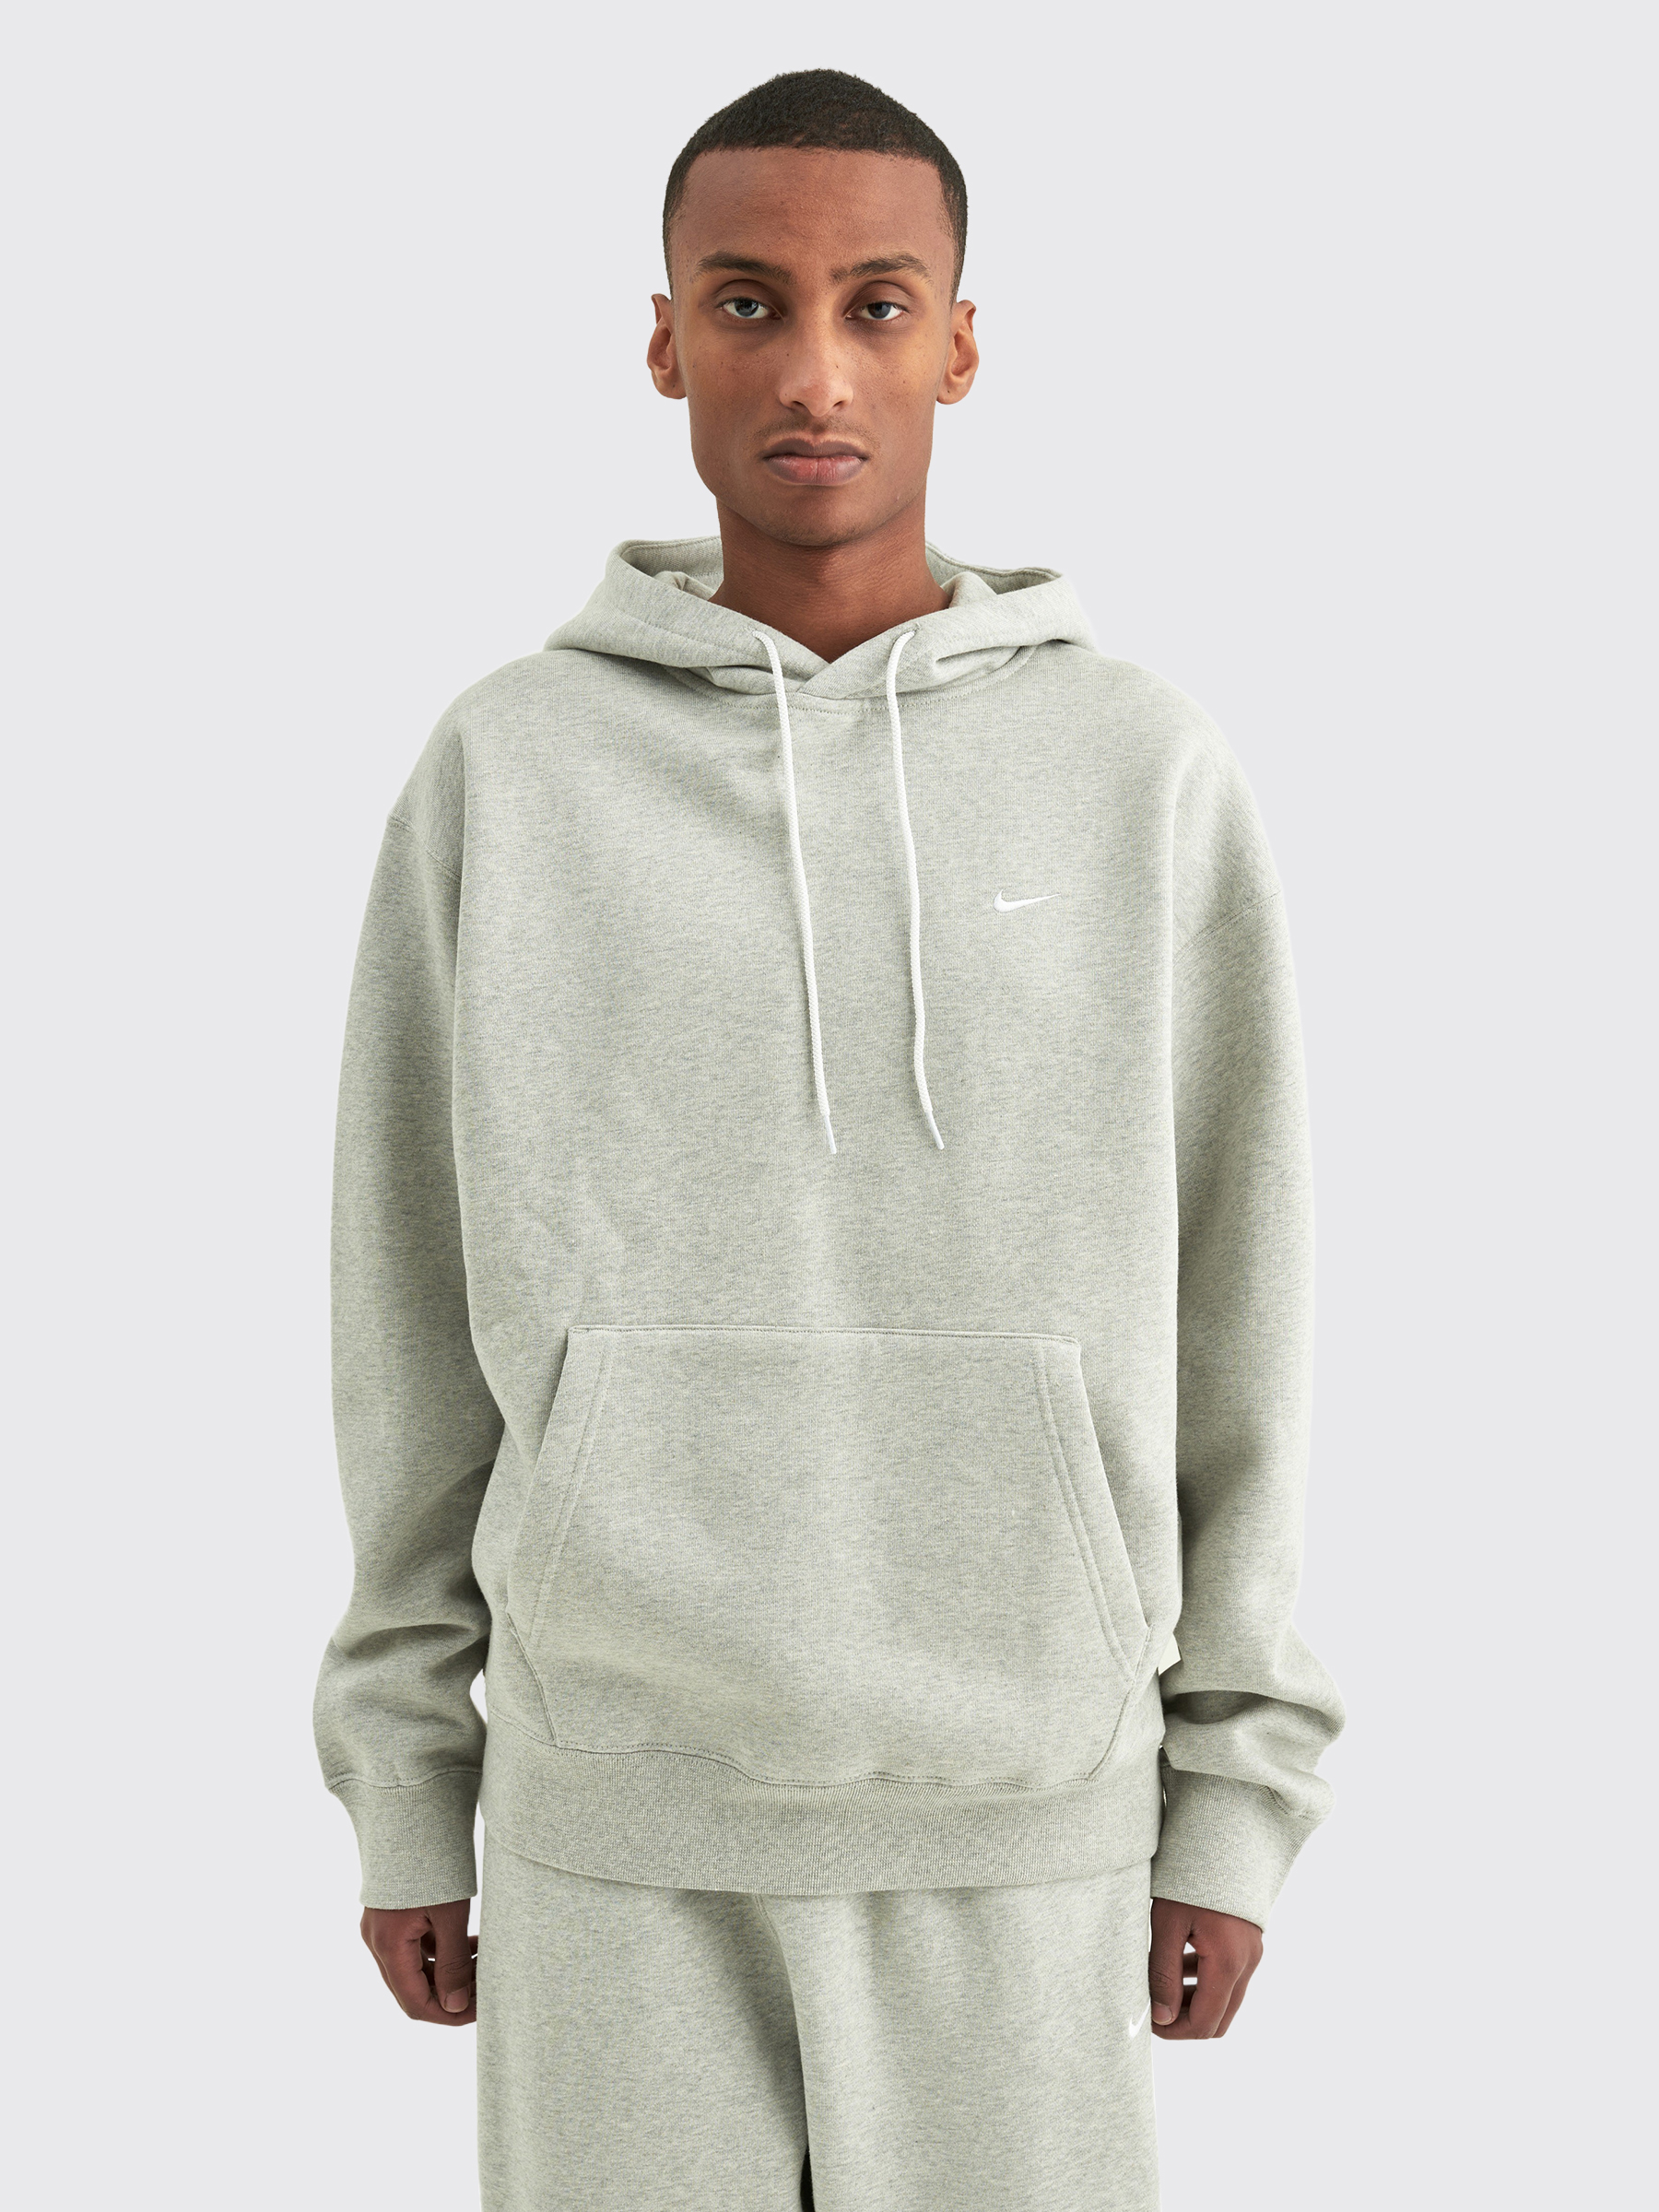 nikelab hoodie grey